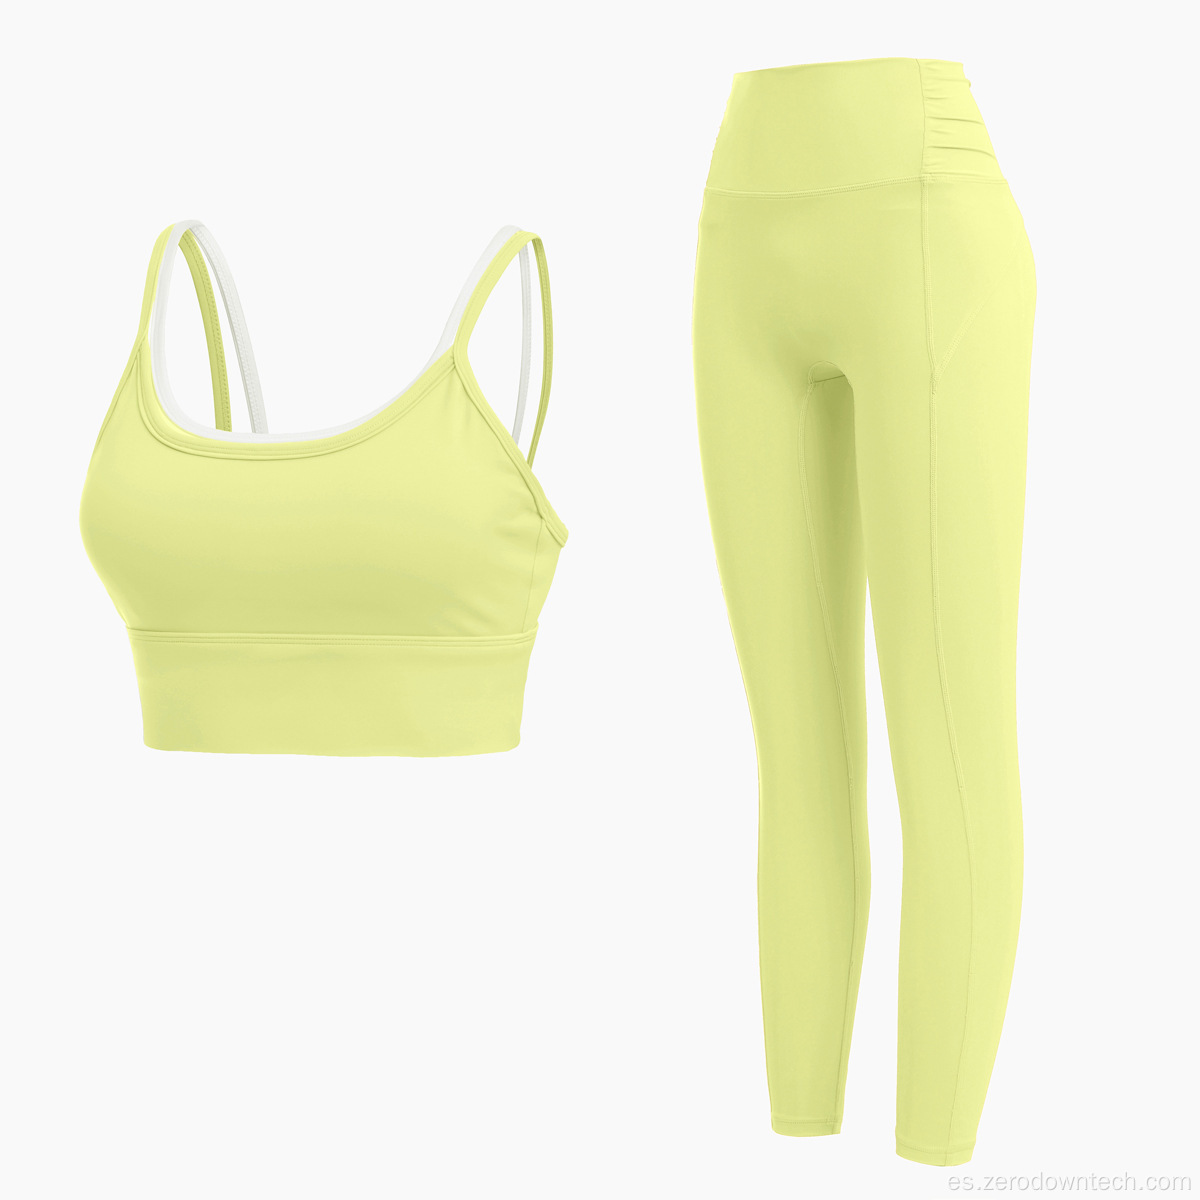 Nuevo fa-ke dos piezas sujetador de yoga pantalones ropa de yoga reunión a prueba de golpes color a juego ropa deportiva deportiva